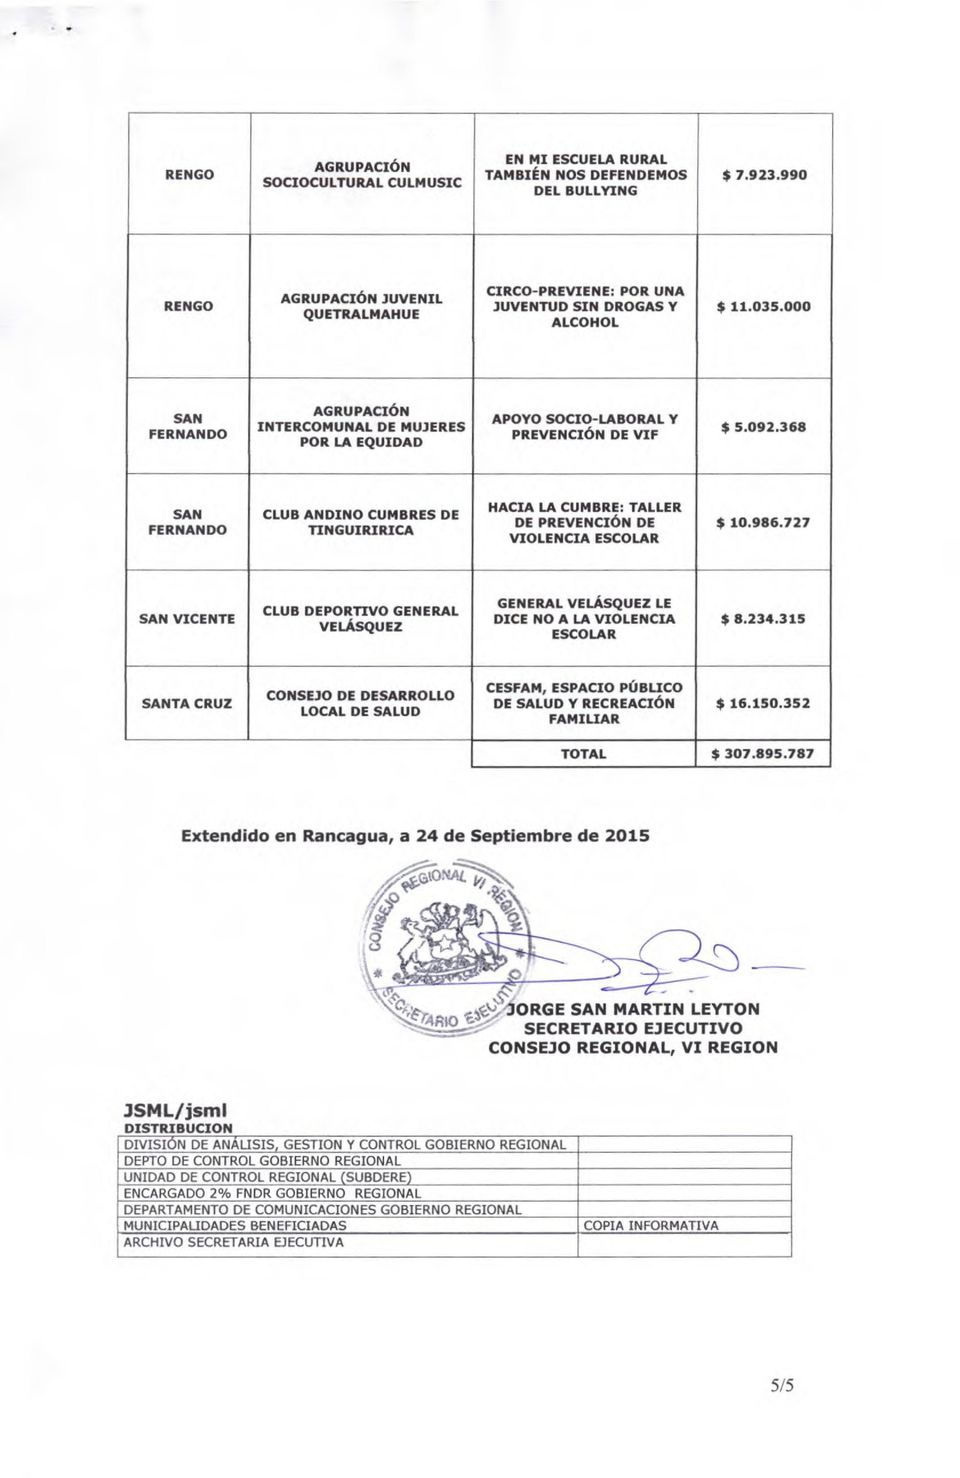 368 SAN FERNANDO CLUB ANDINO CUMBRES DE TINGUIRIRICA HACIA LA CUMBRE: TALLER DE PREVENCIÓN DE $ 10.986.